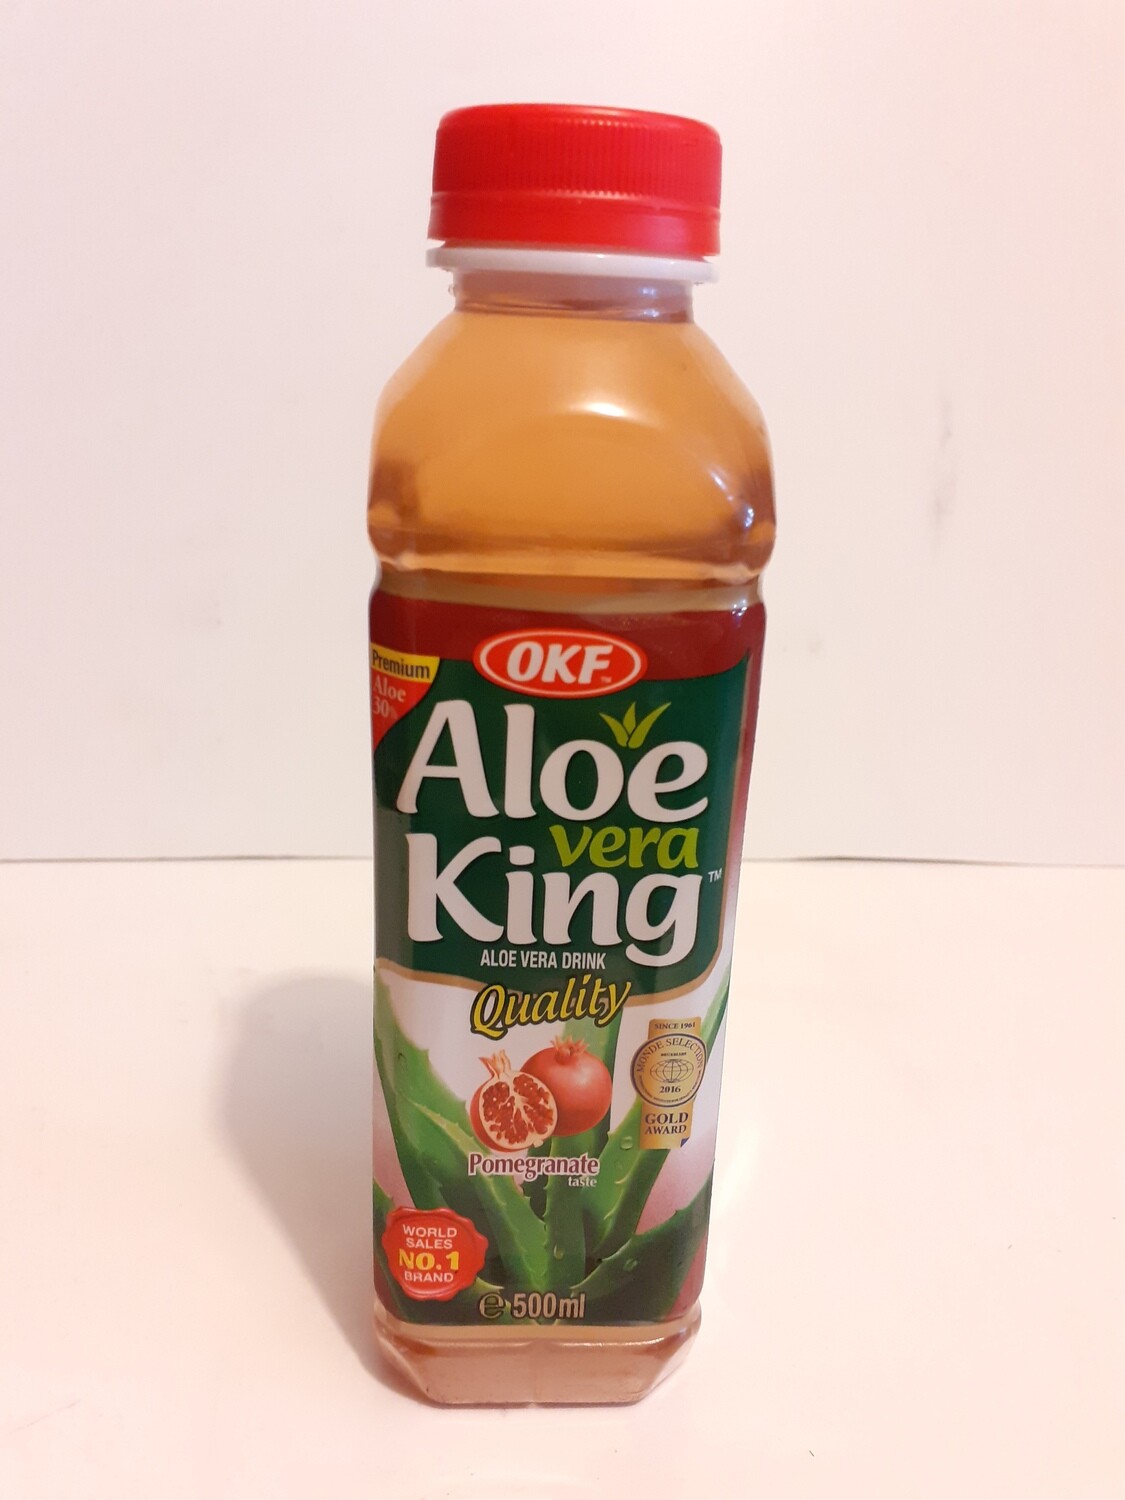 Pomegranate Aloe vera King OKF 500 ml